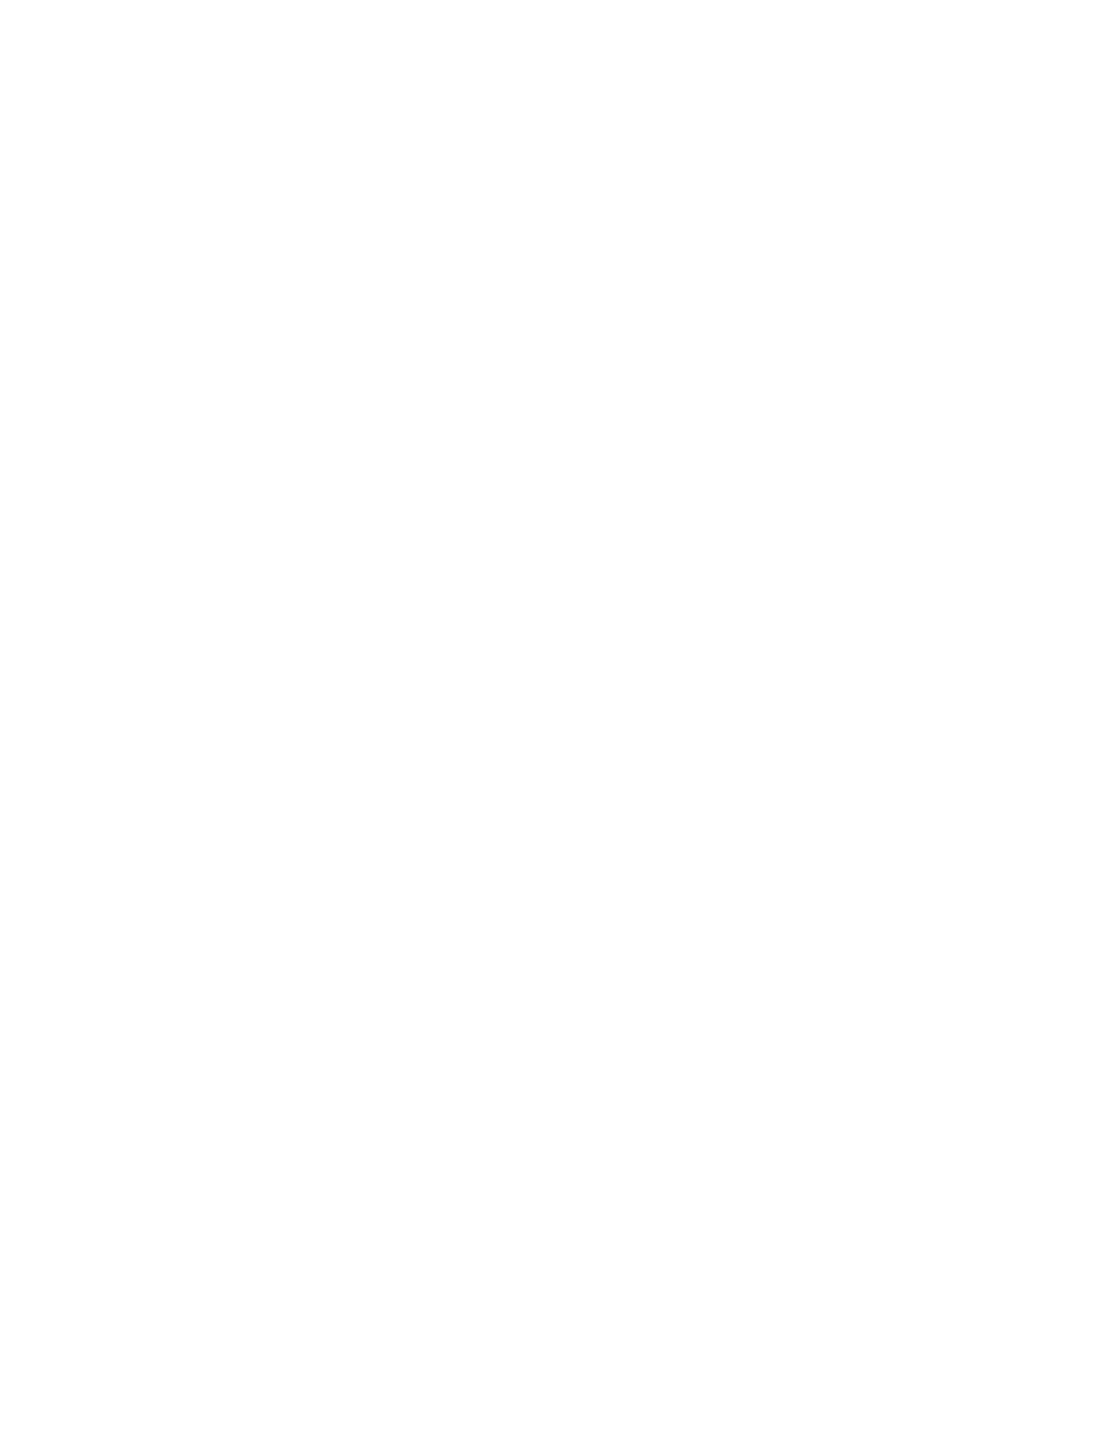 Coldwell Banker Flanagan Realty